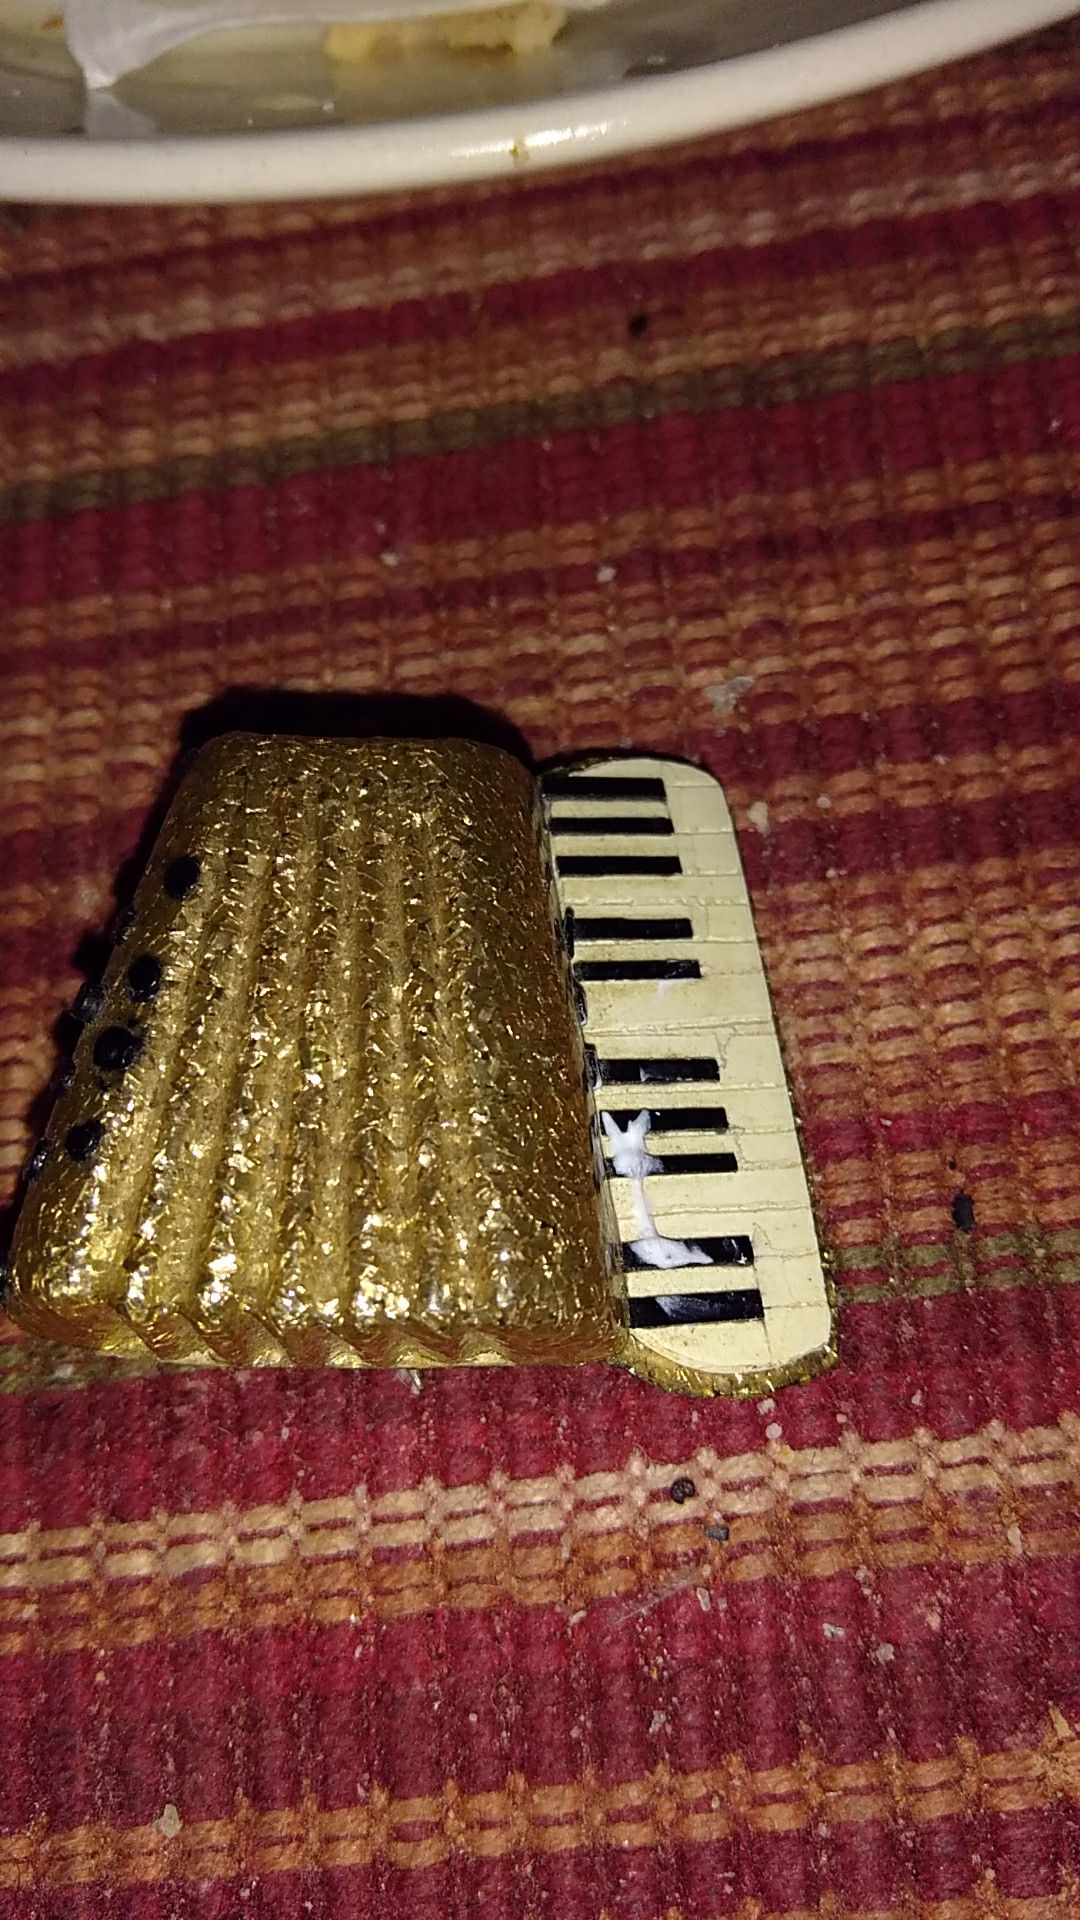 A accordion pin